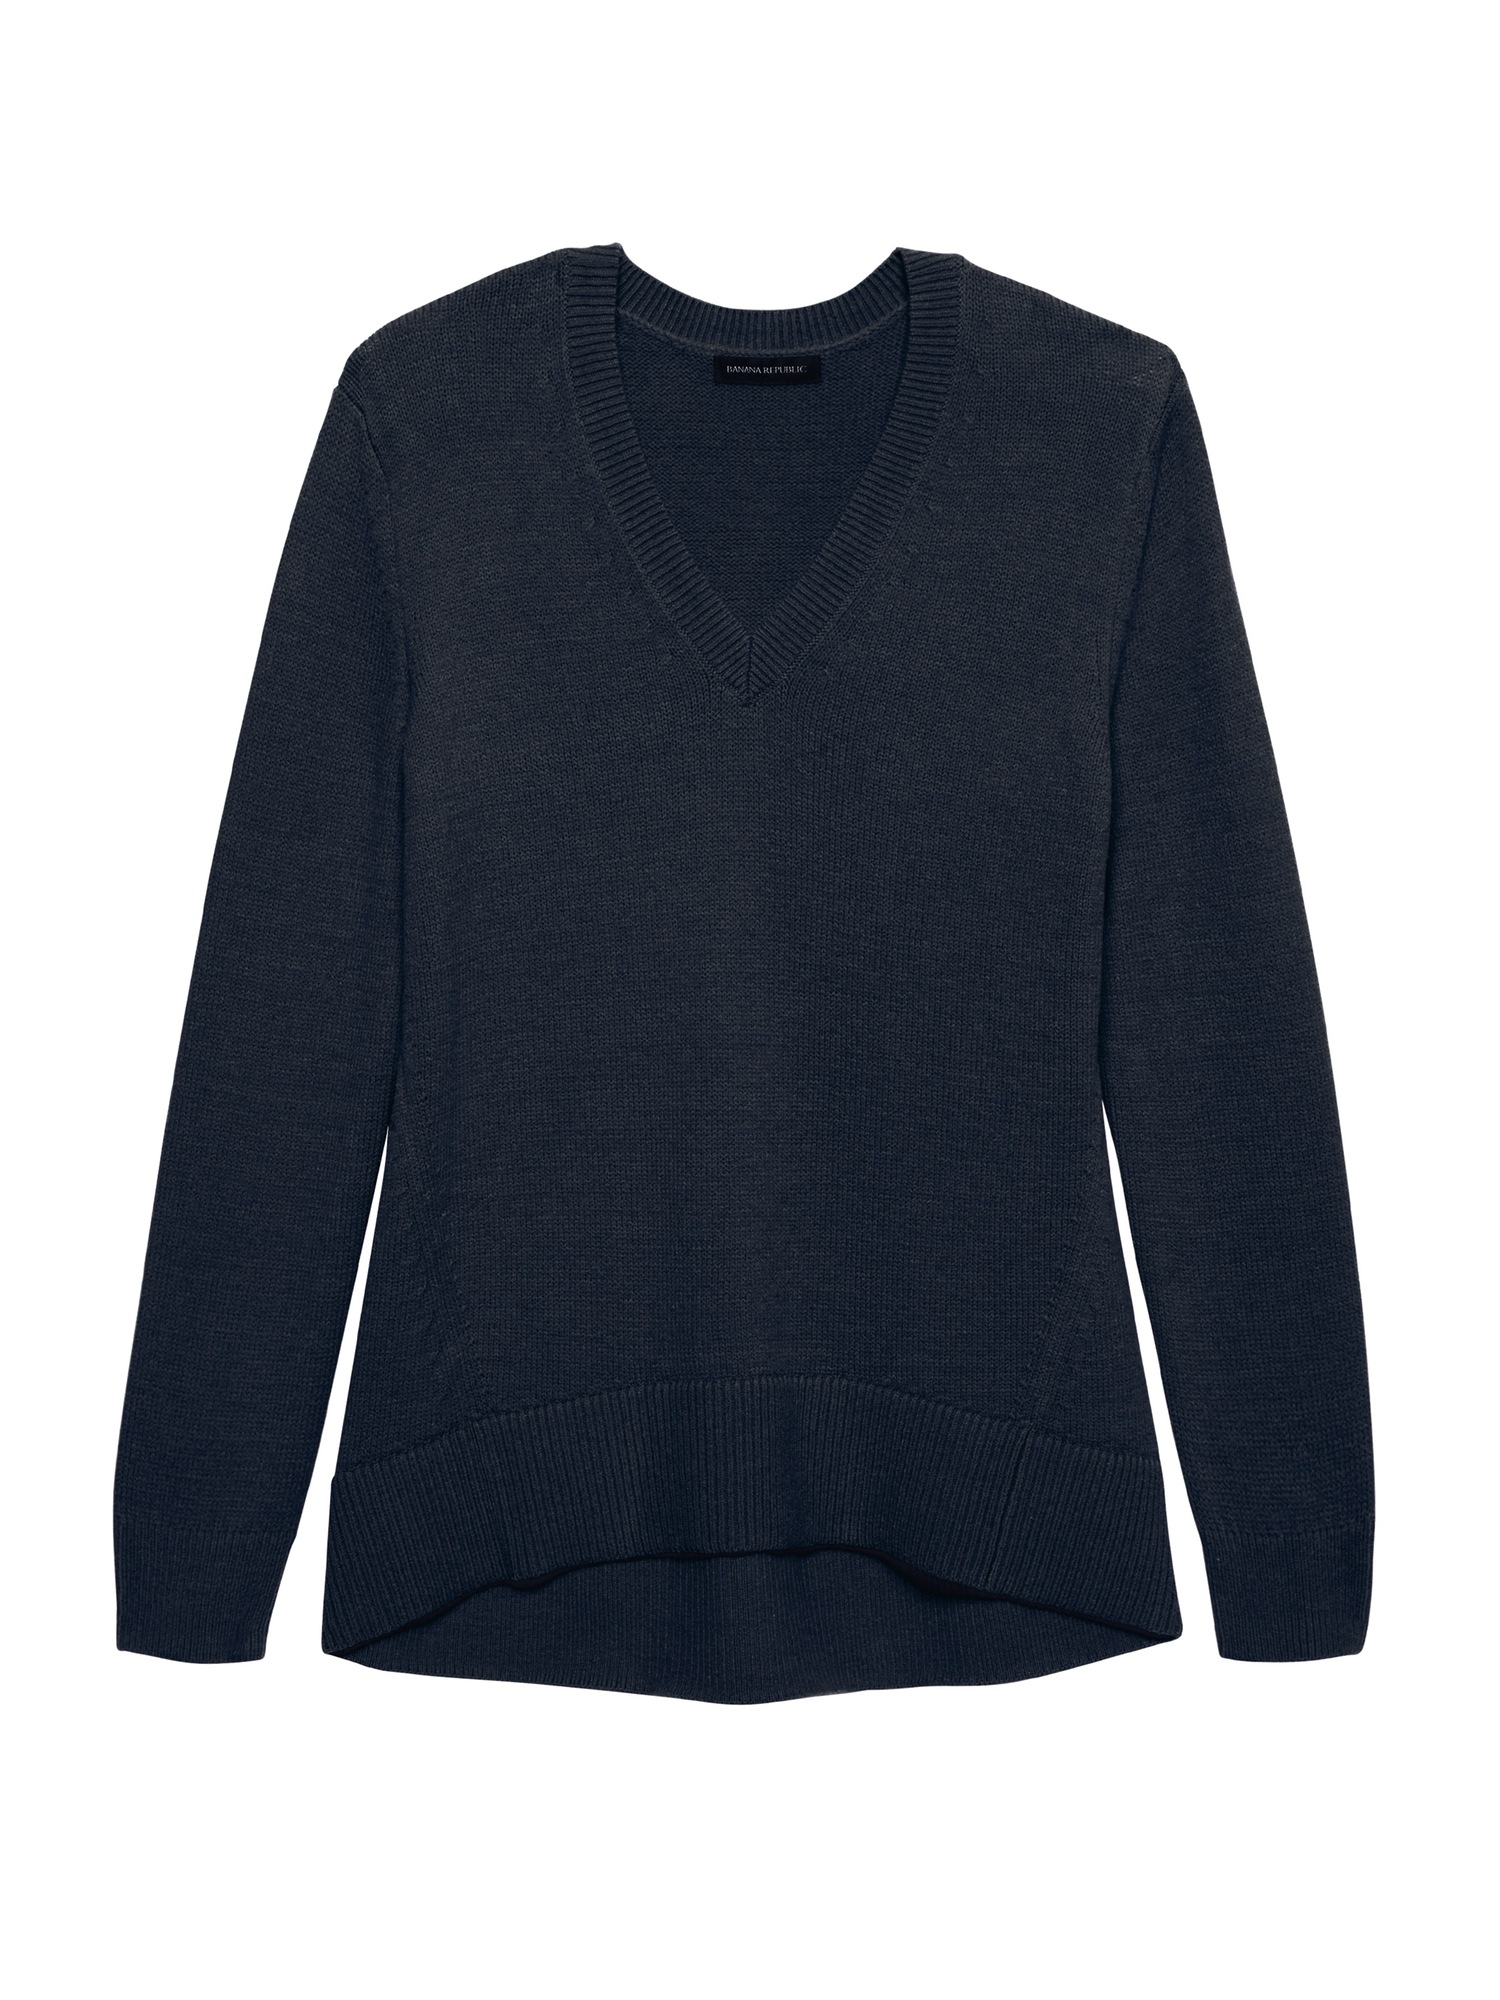 Supersoft Cotton Blend Boyfriend V-Neck Sweater